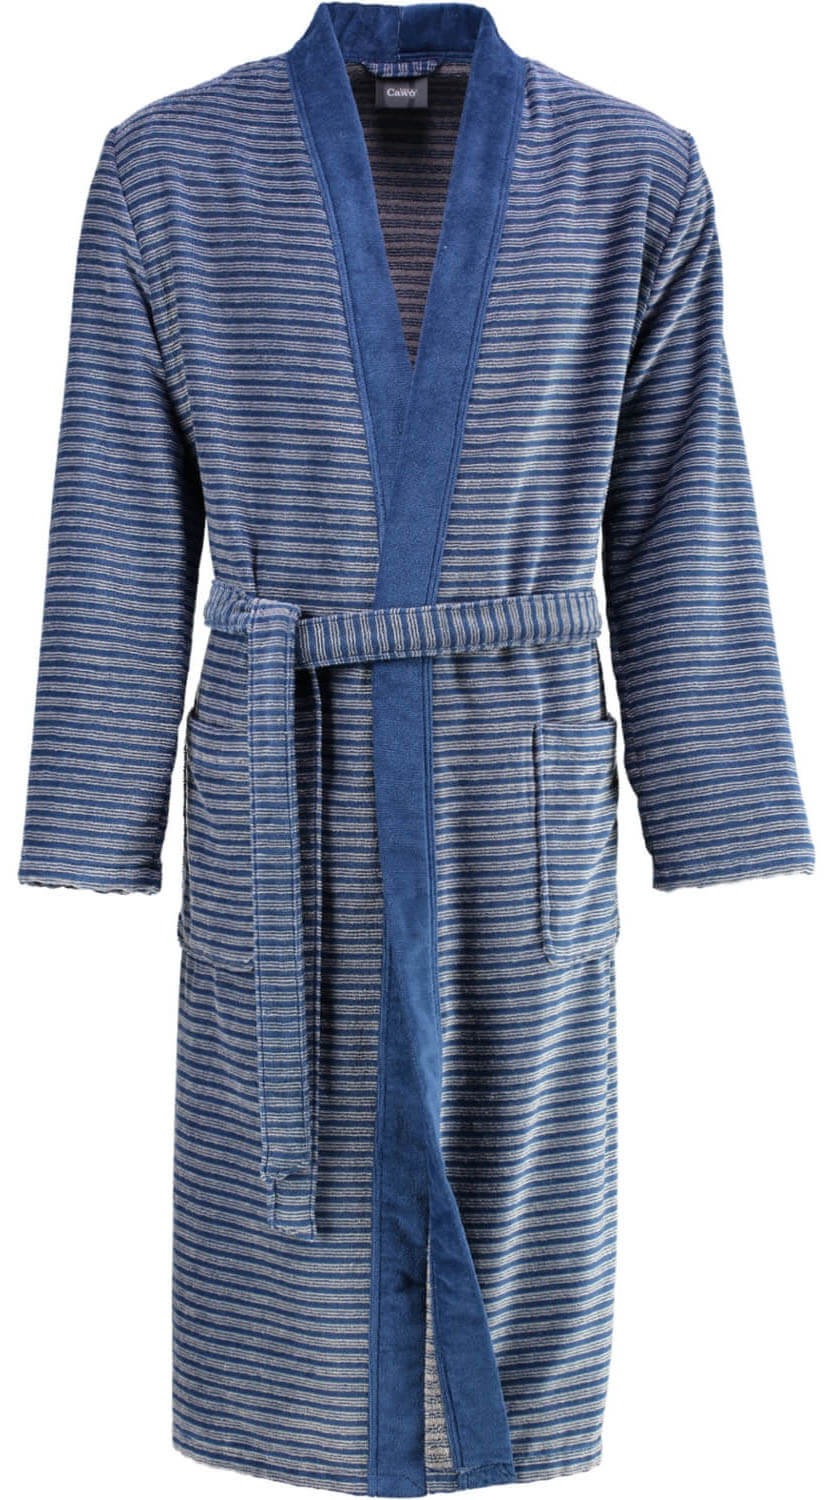 Мужской халат Cawo Kimono Blau (2844) ☞ Размер: 50